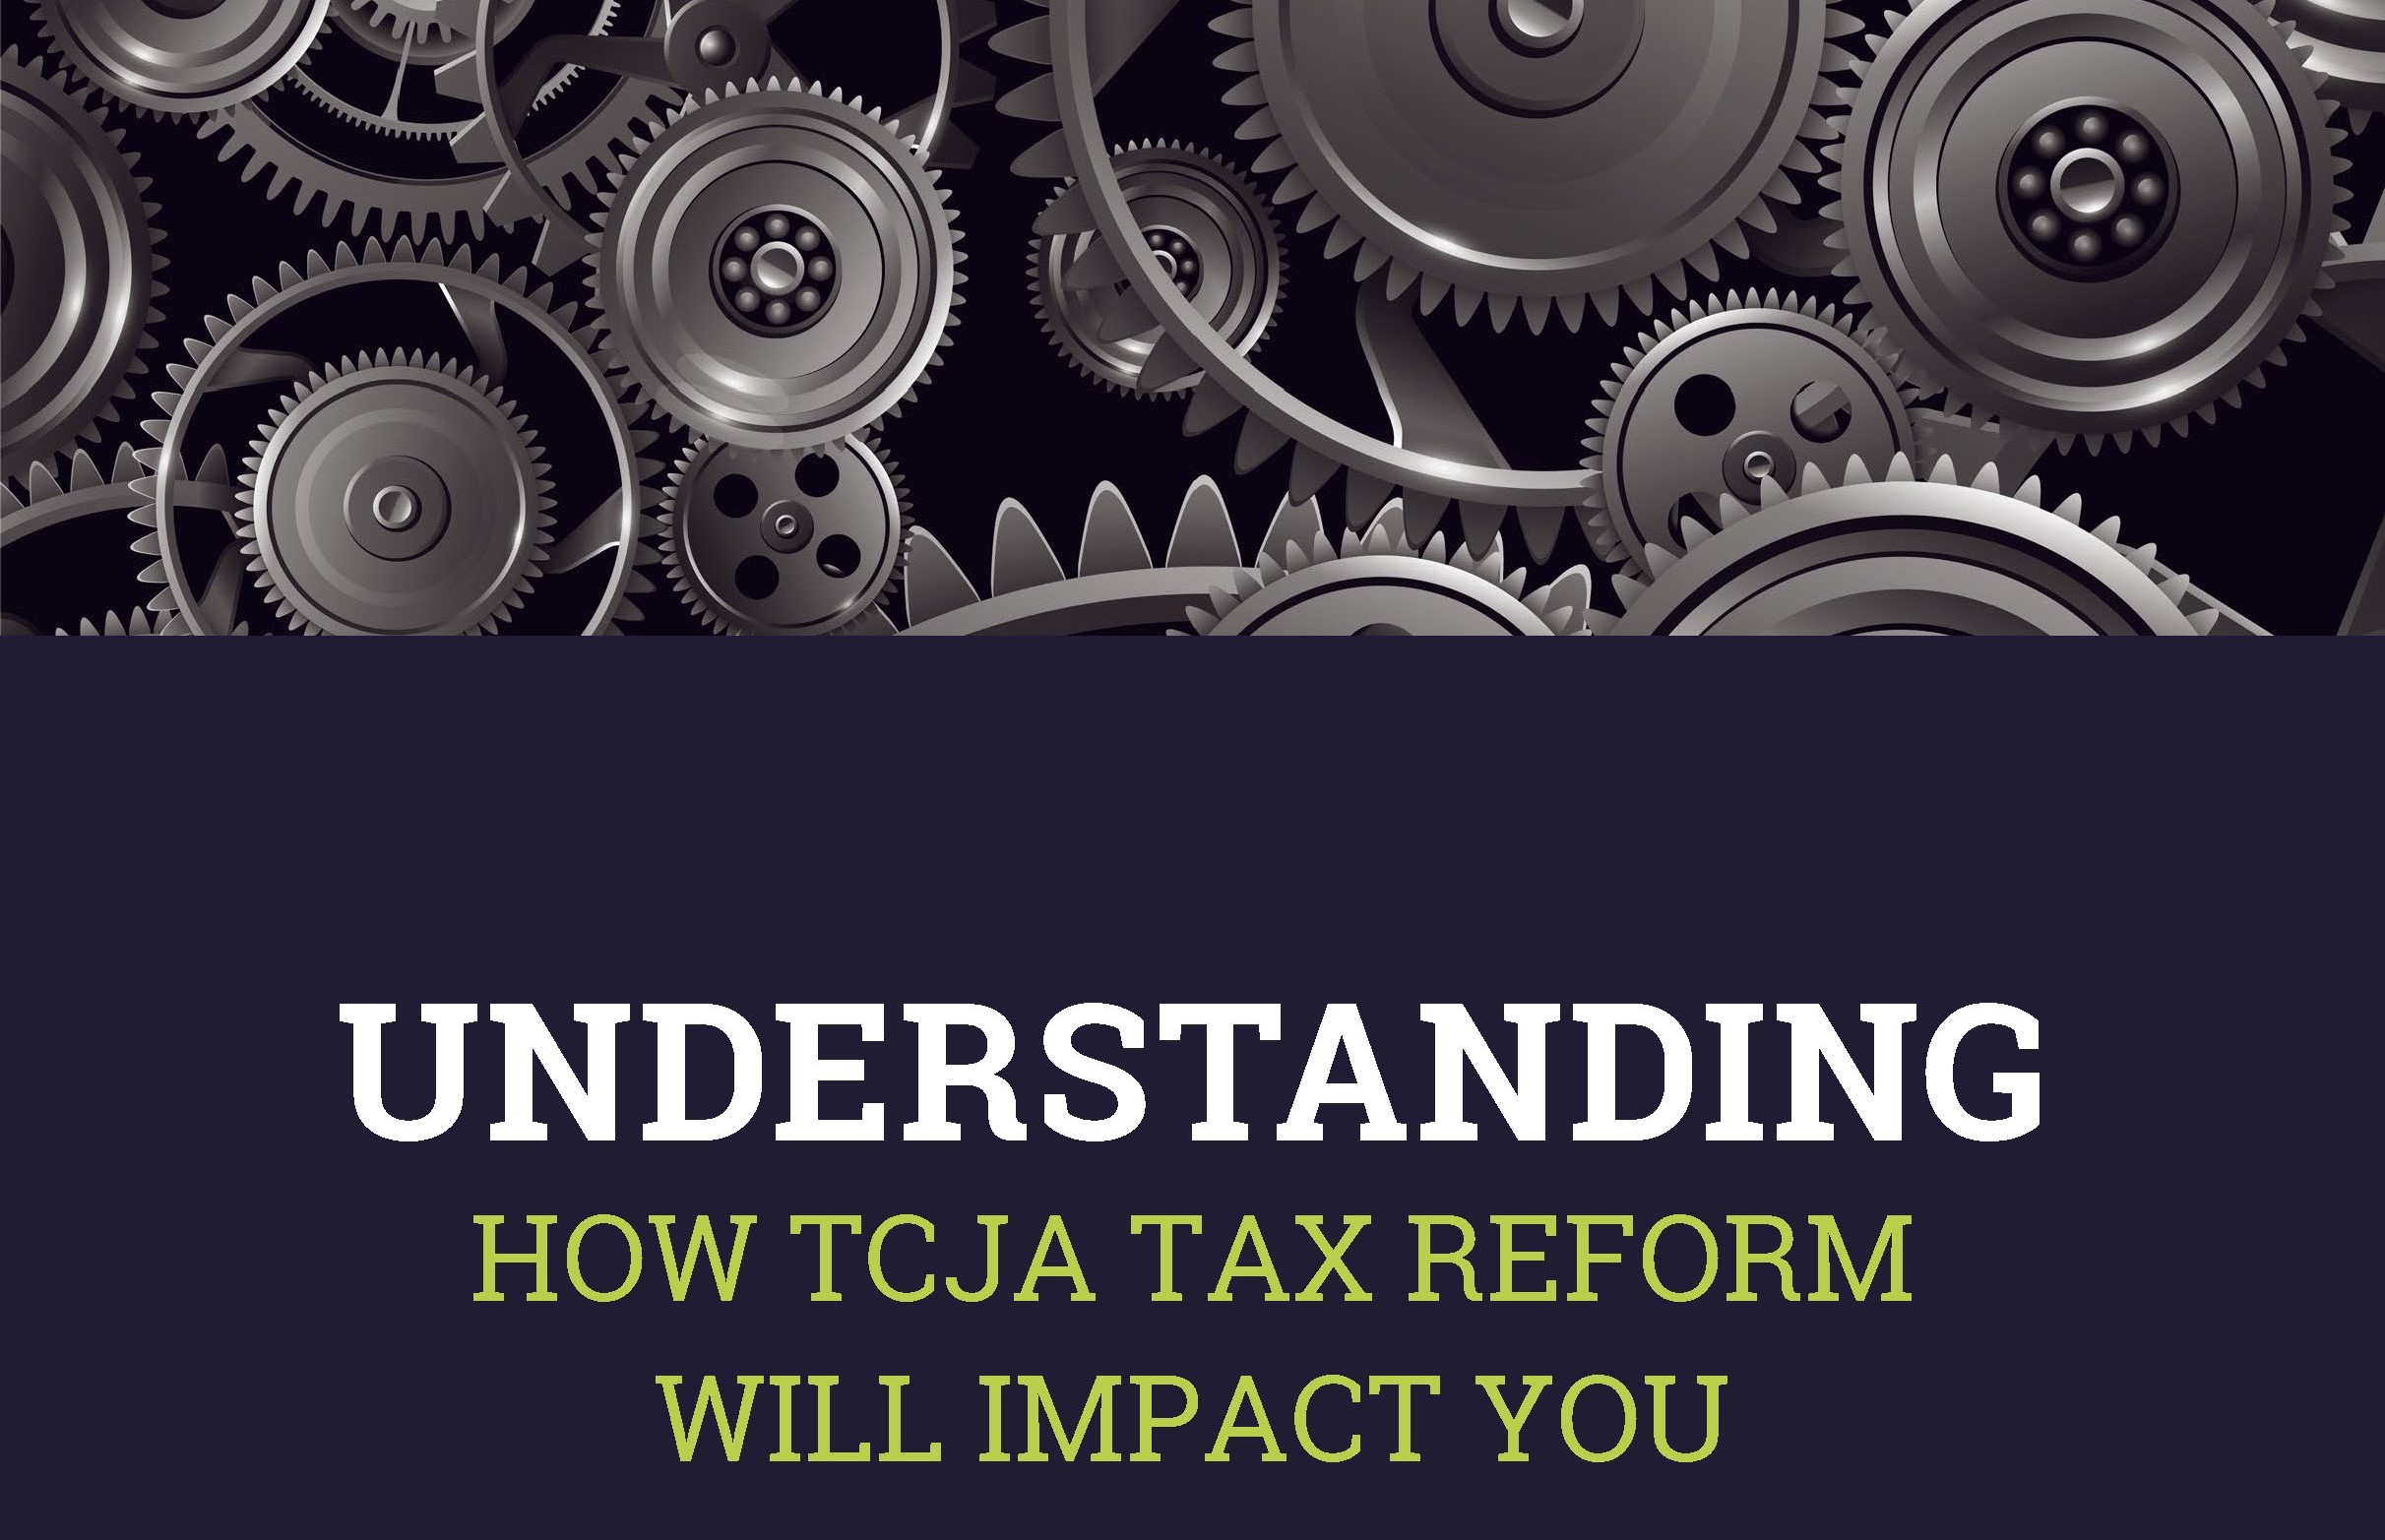 TCJA tax reform